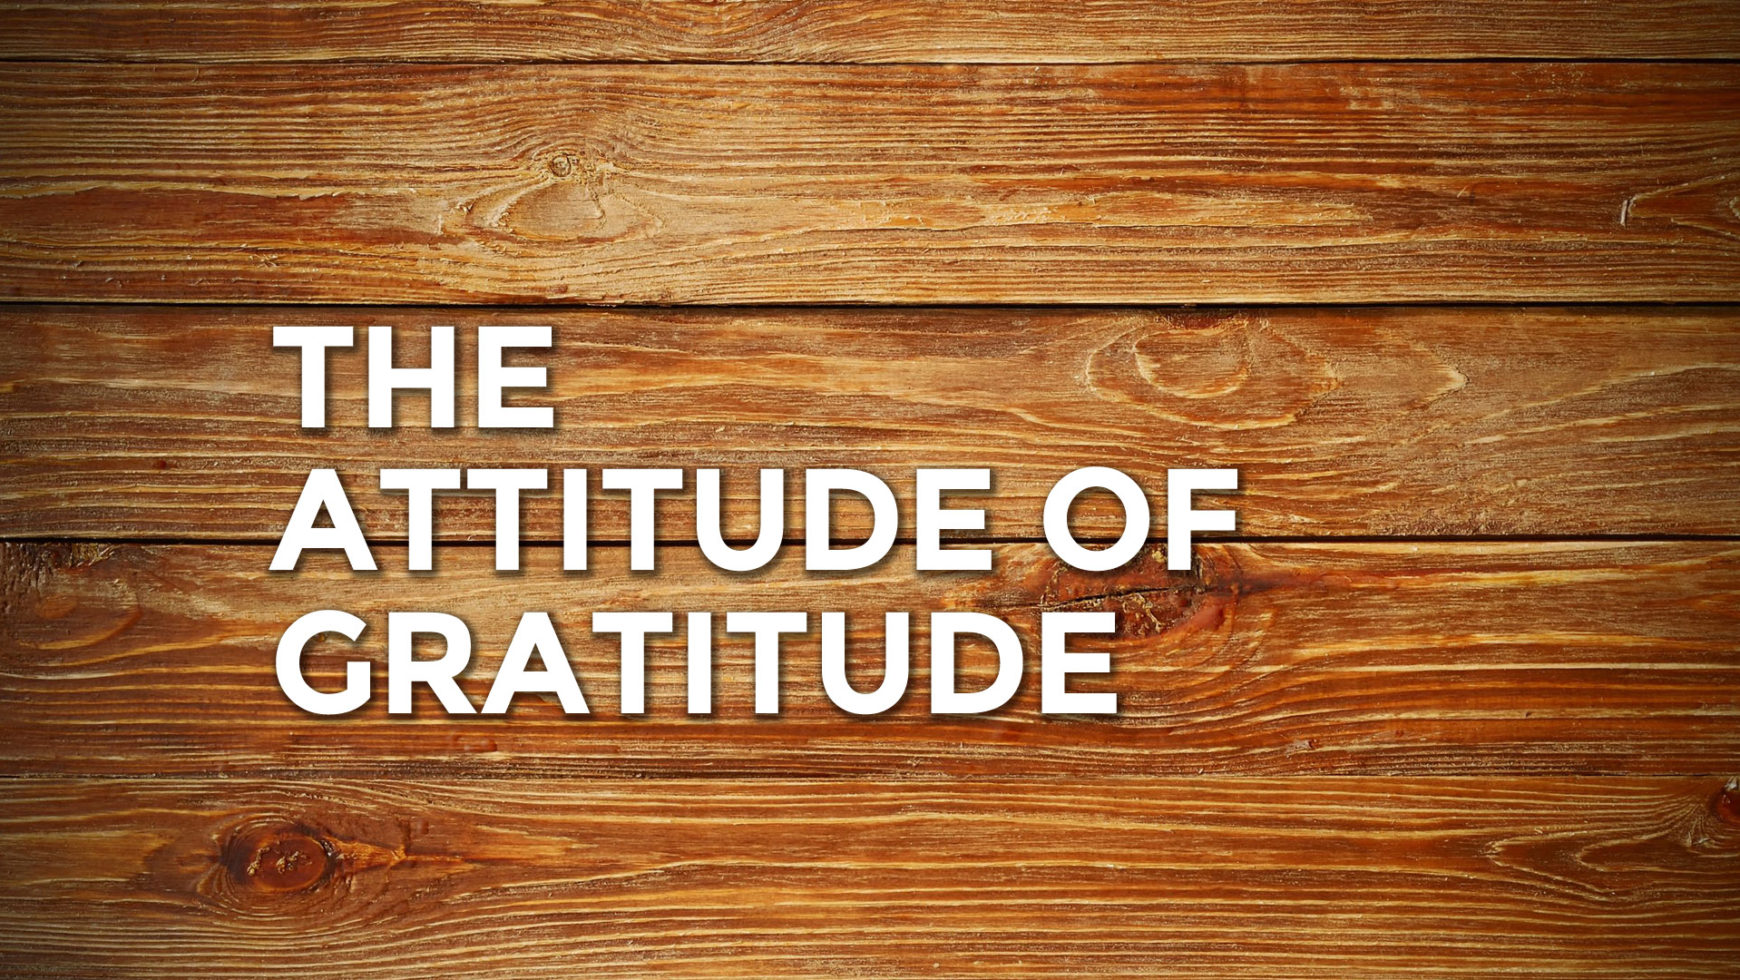 The attitude of gratitude